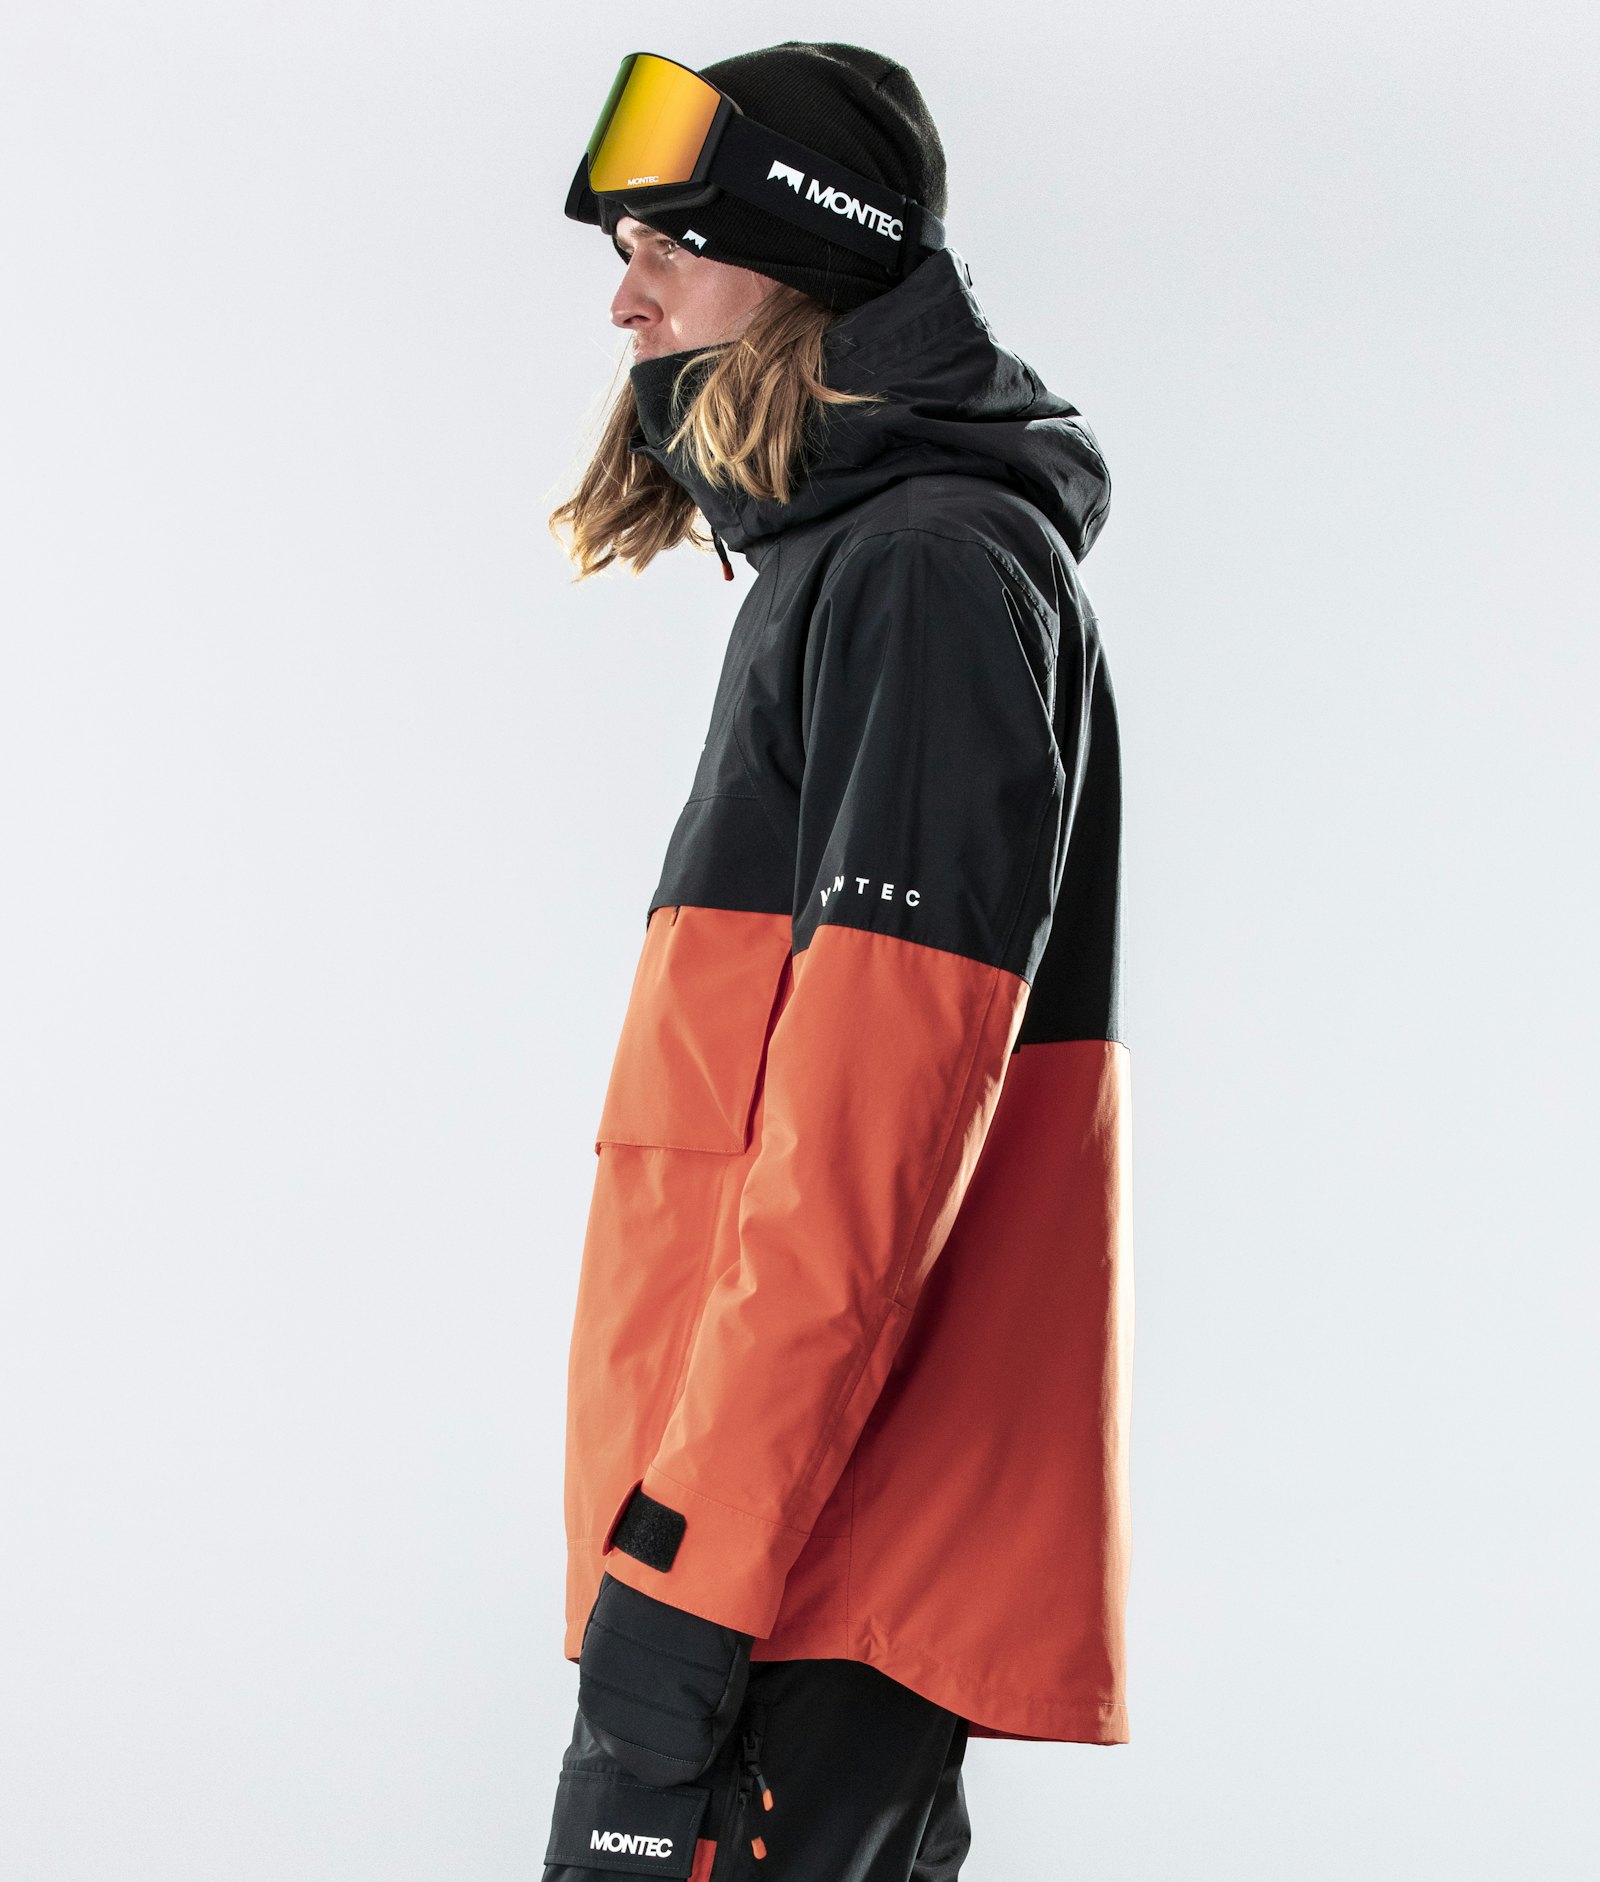 Dune 2020 Snowboardjacke Herren Black/Orange